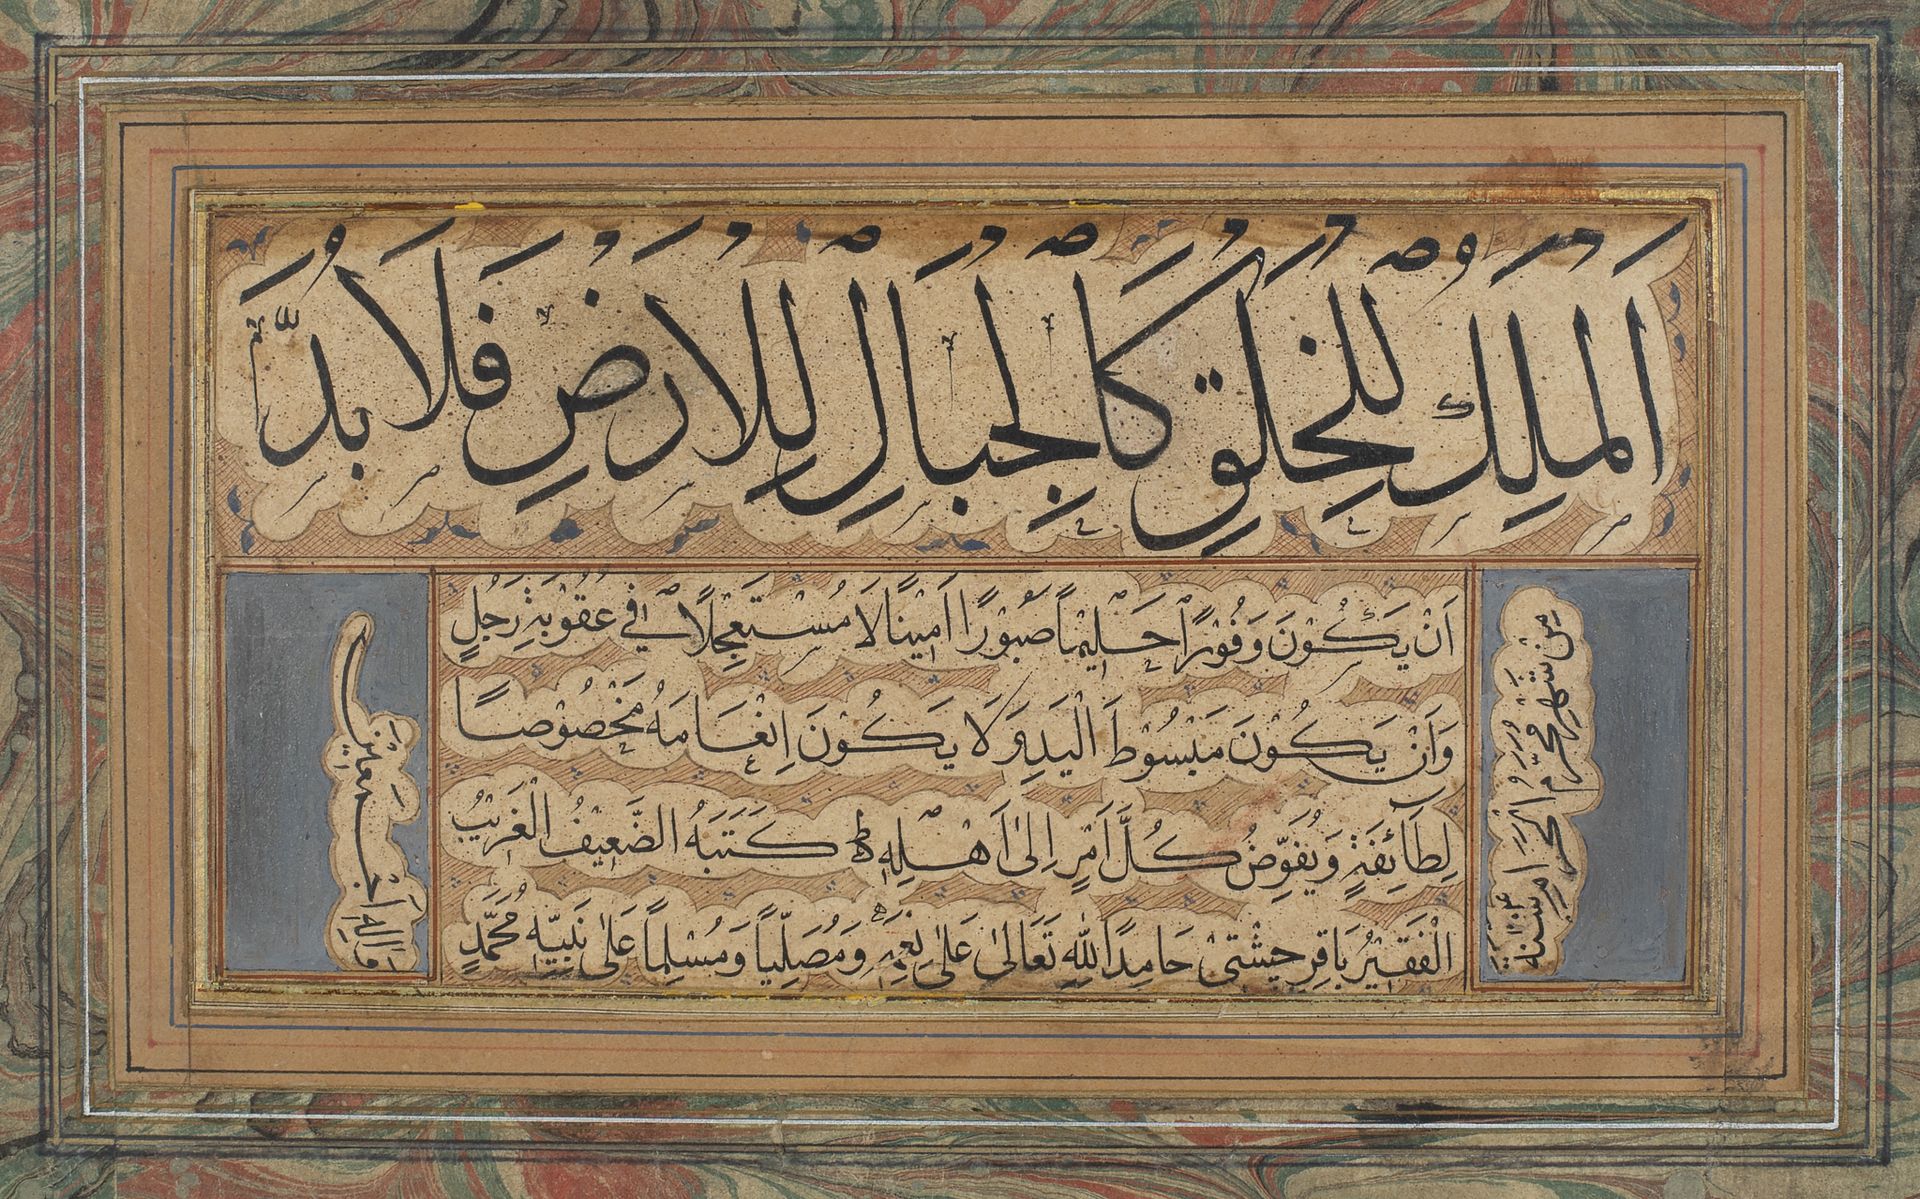 Qita' par Bâqir Tsheshti Hamid en 1214H. ('''=1799) Kalligraphische Übung in sch&hellip;